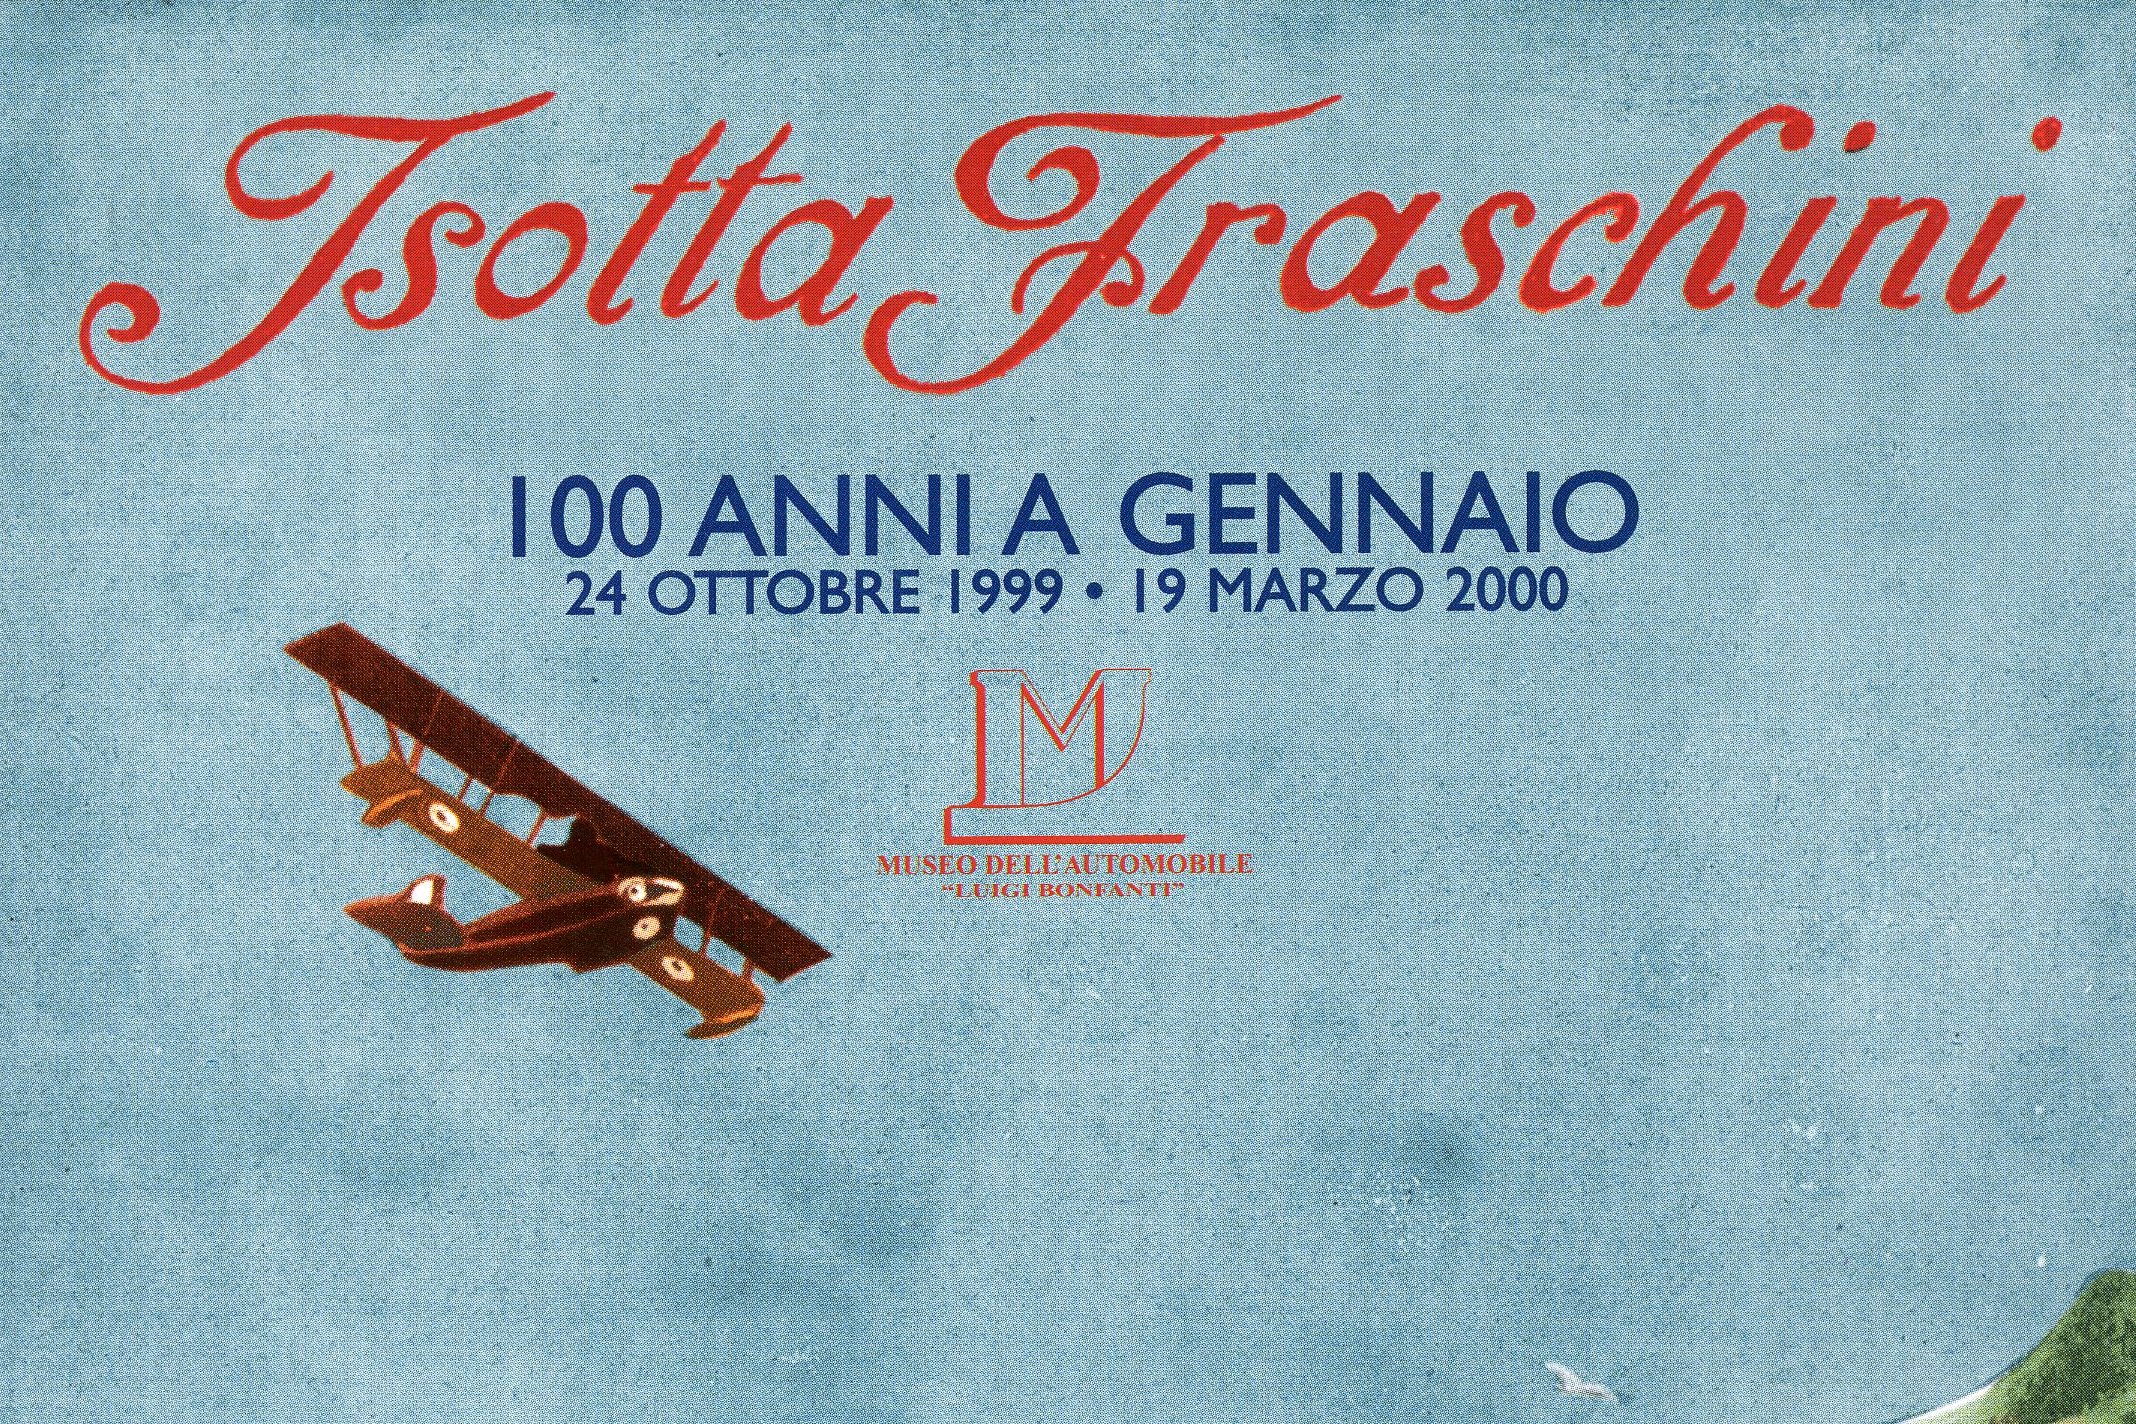 Exhibition, “Isotta Fraschini, 100 anni”, Bassano del Grappa.